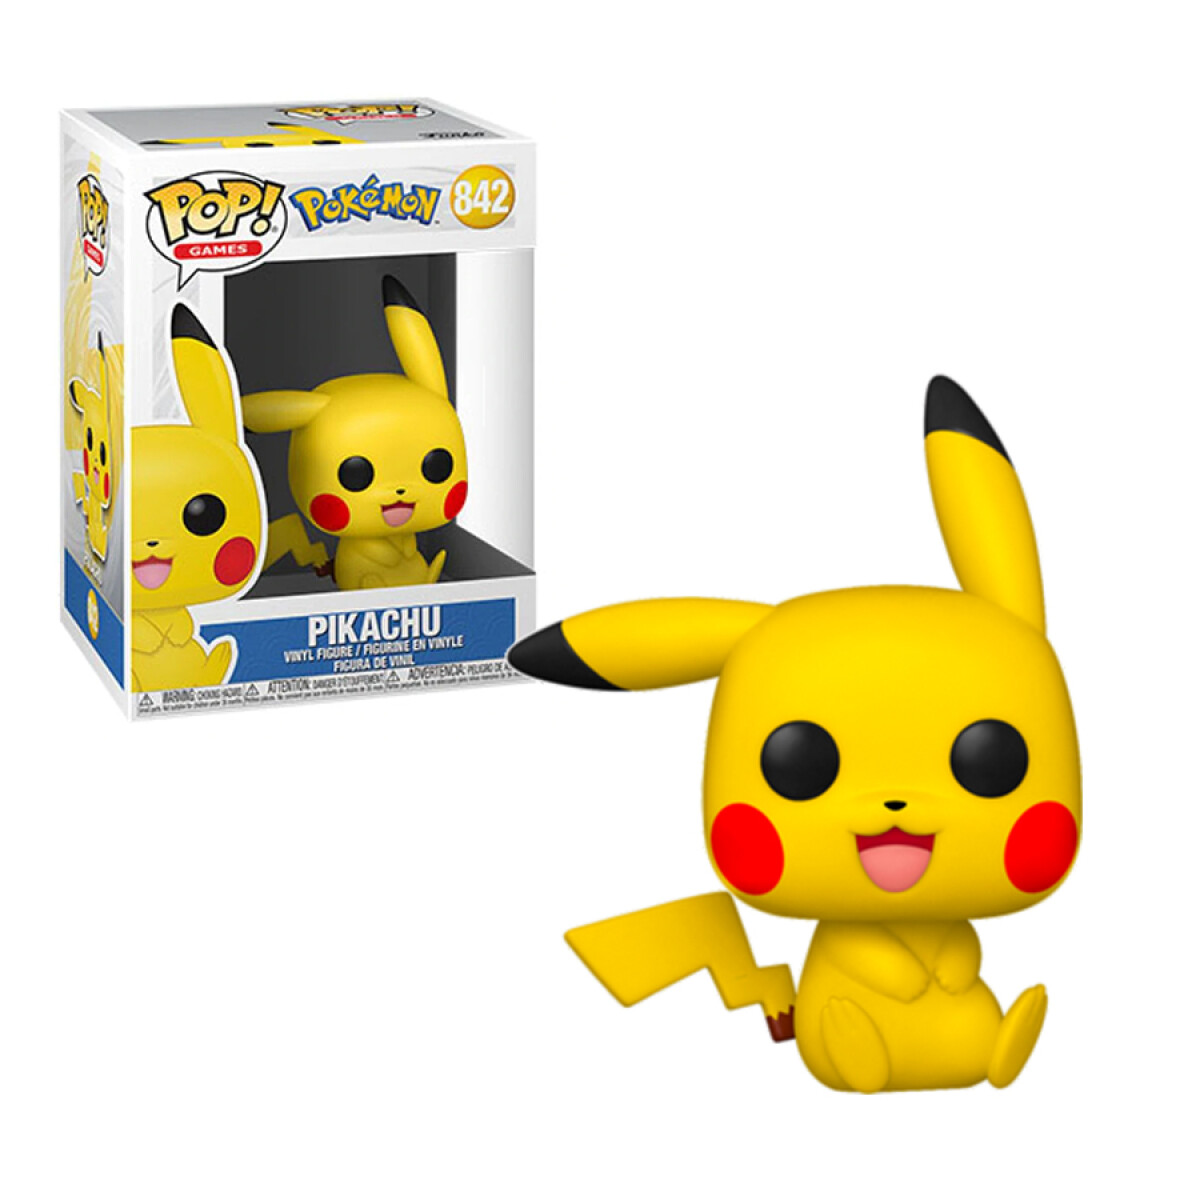 Pikachu Sentado · Pokemon - 842 